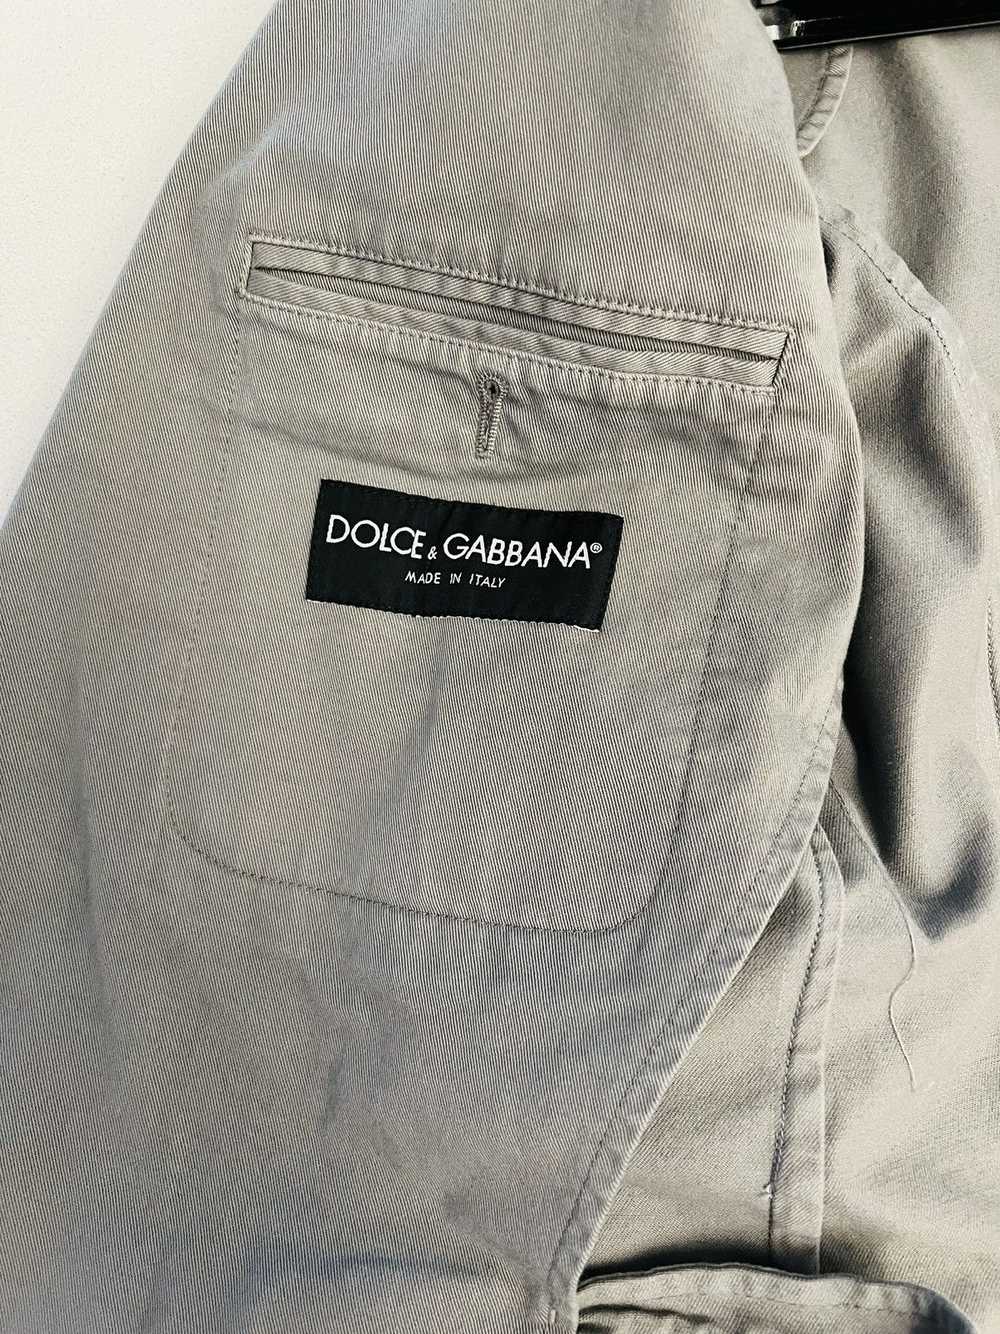 Dolce & Gabbana Dolce & Gabbana cotton gray jacket - image 4